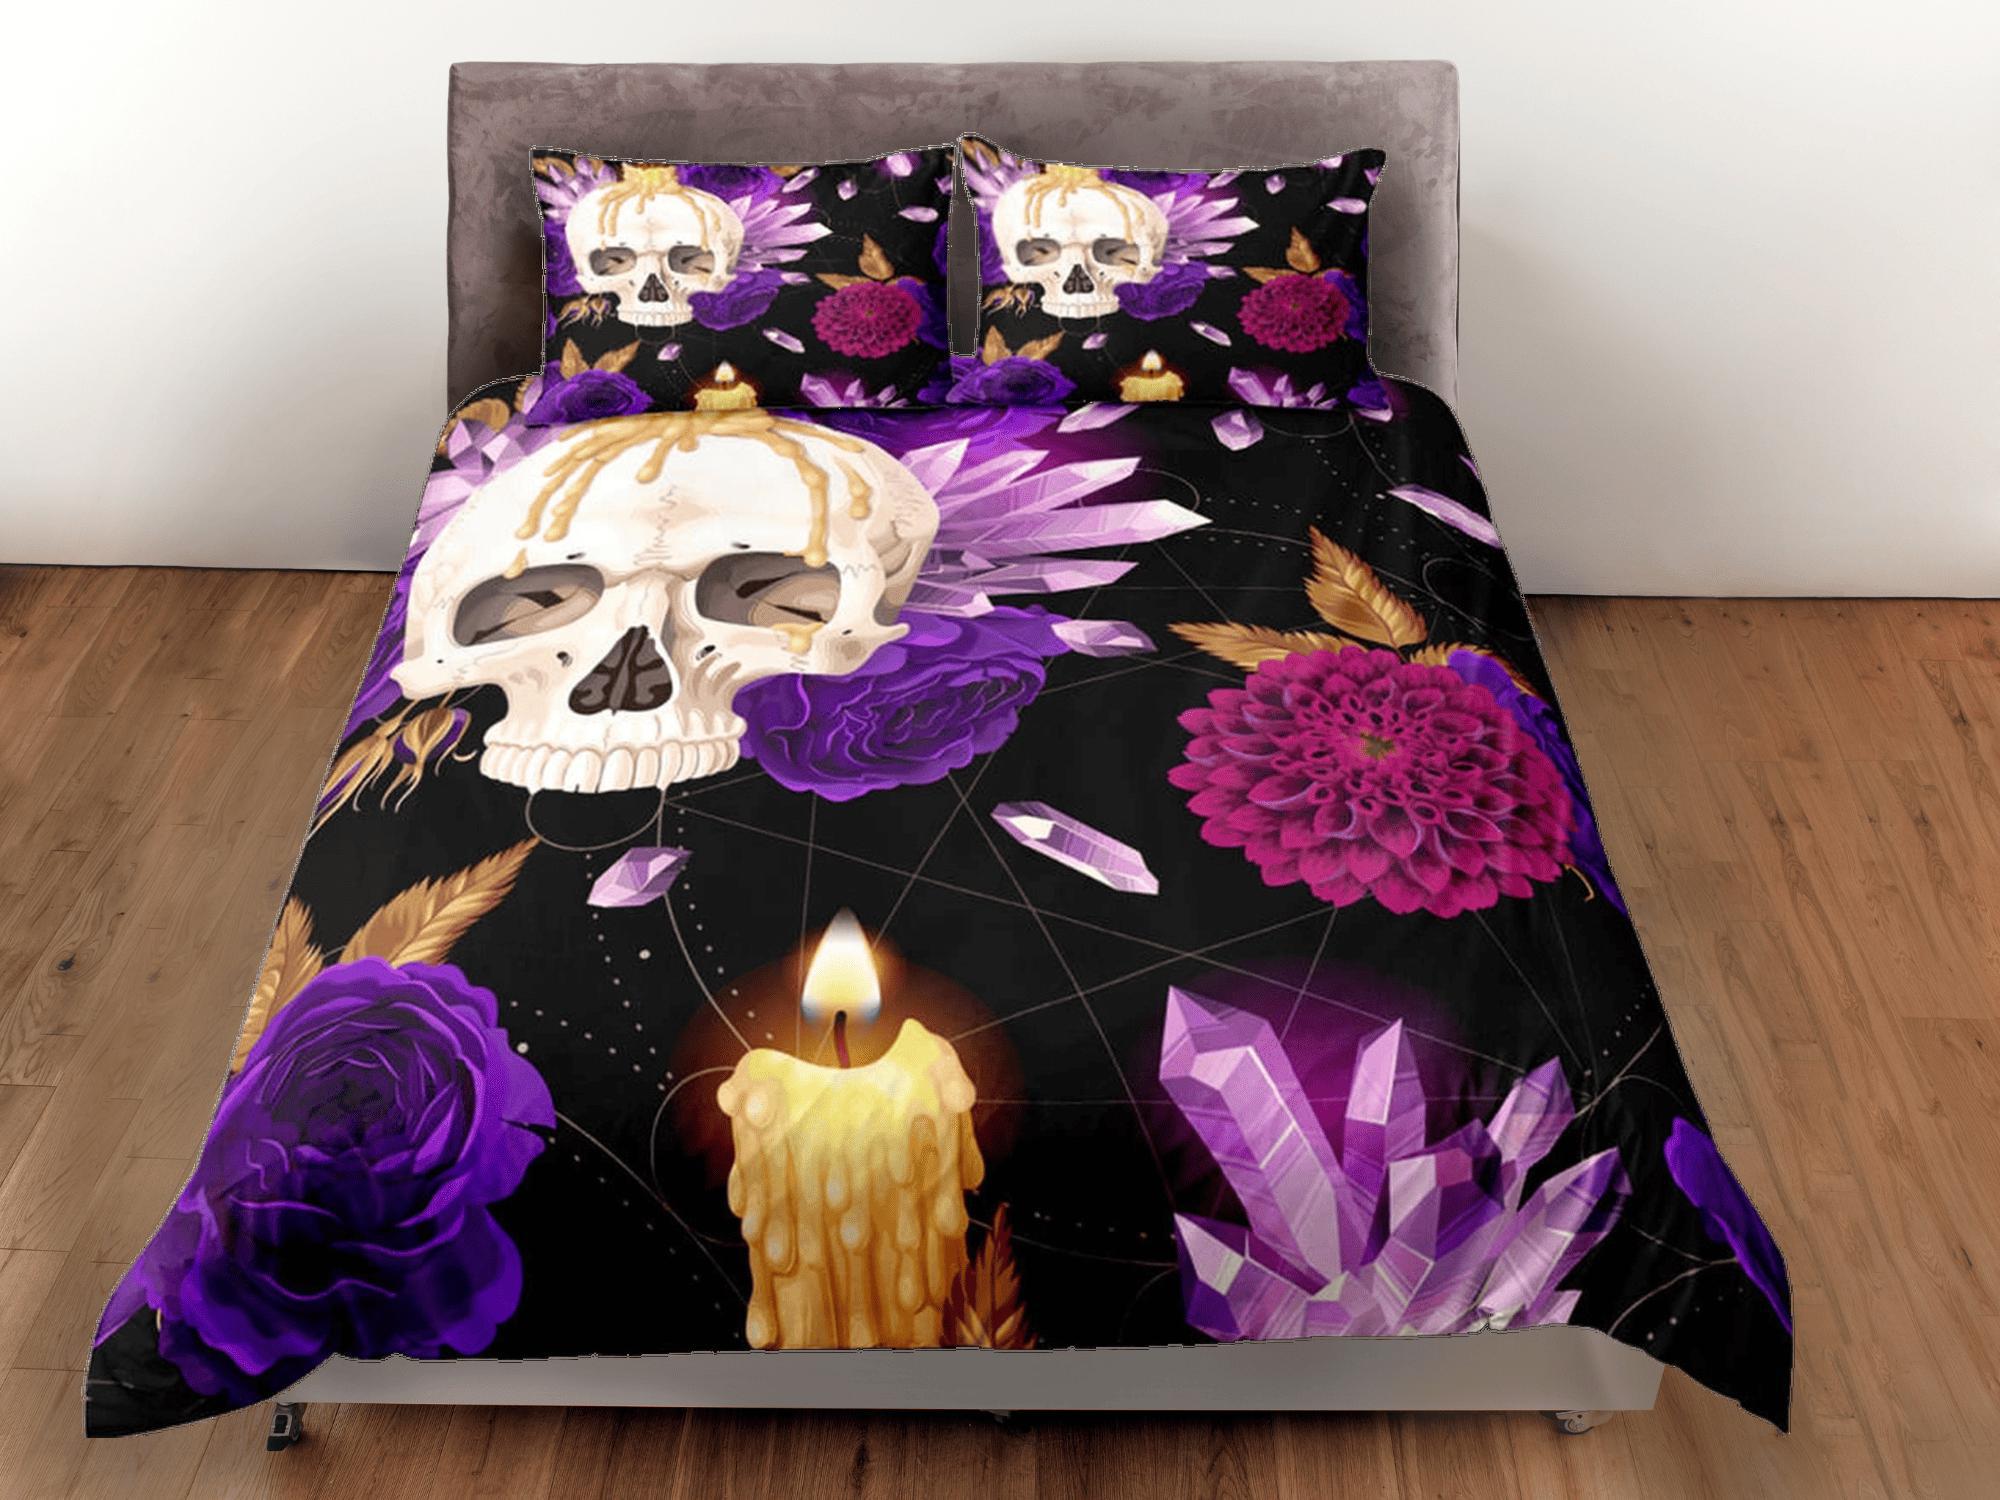 daintyduvet Skull and Roses Black Duvet Cover Set Purple Gothic Bedspread Dorm Bedding Pillowcase Comforter Cover